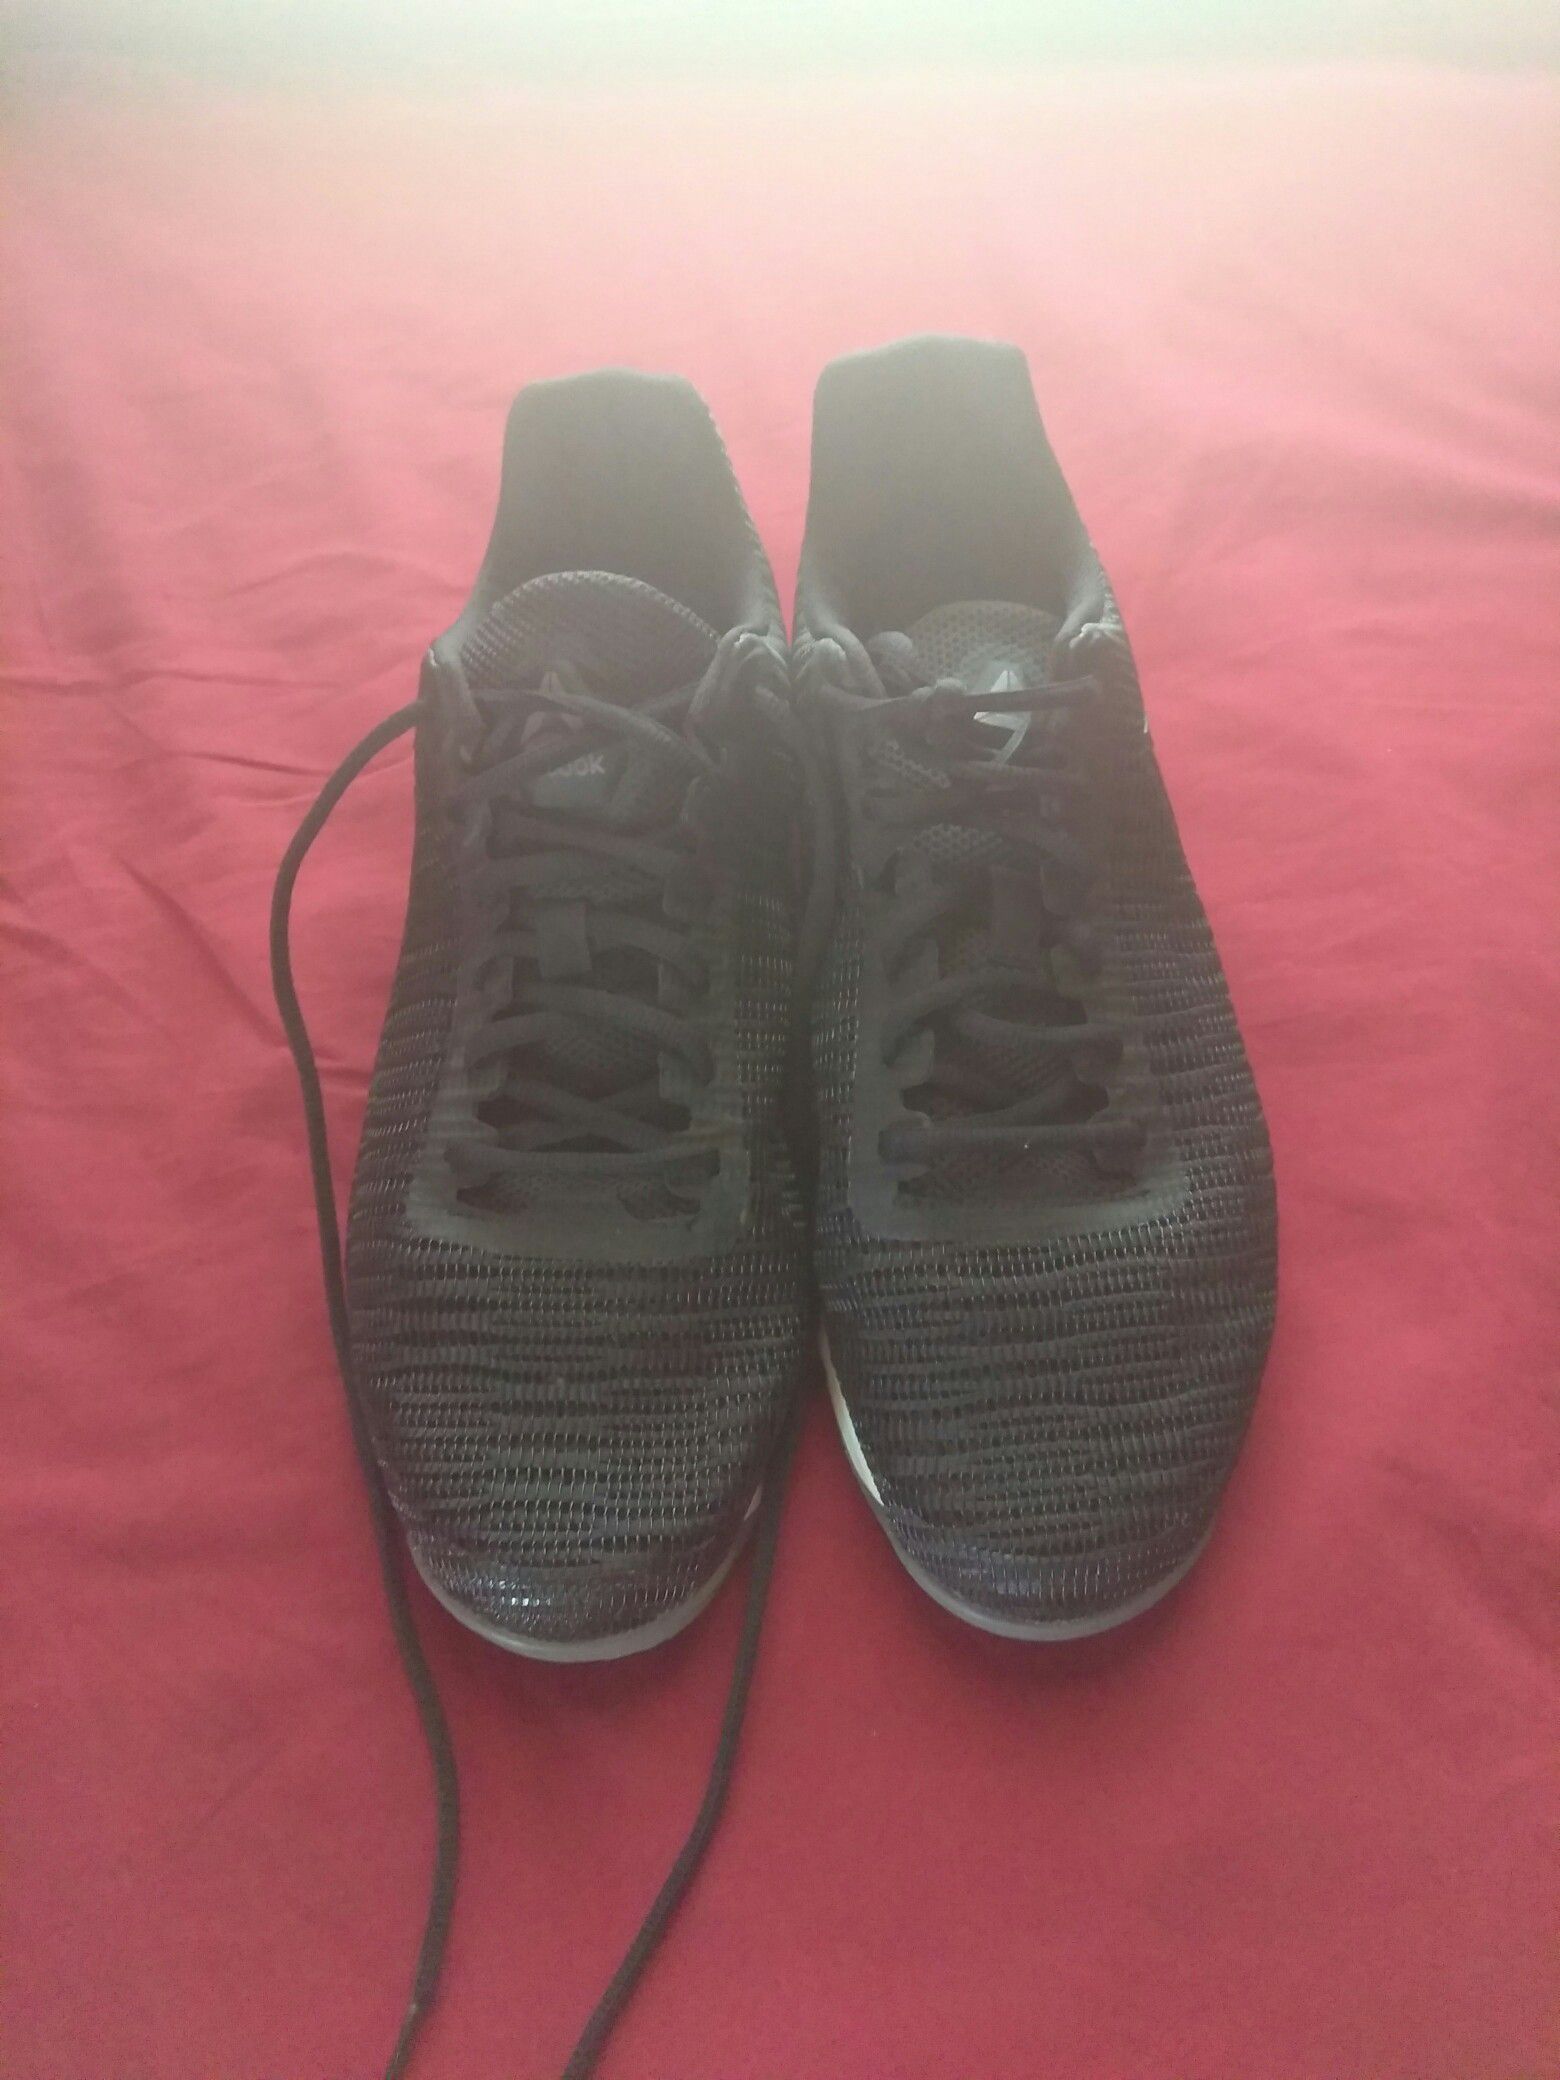 Reebok shoes size 10.5